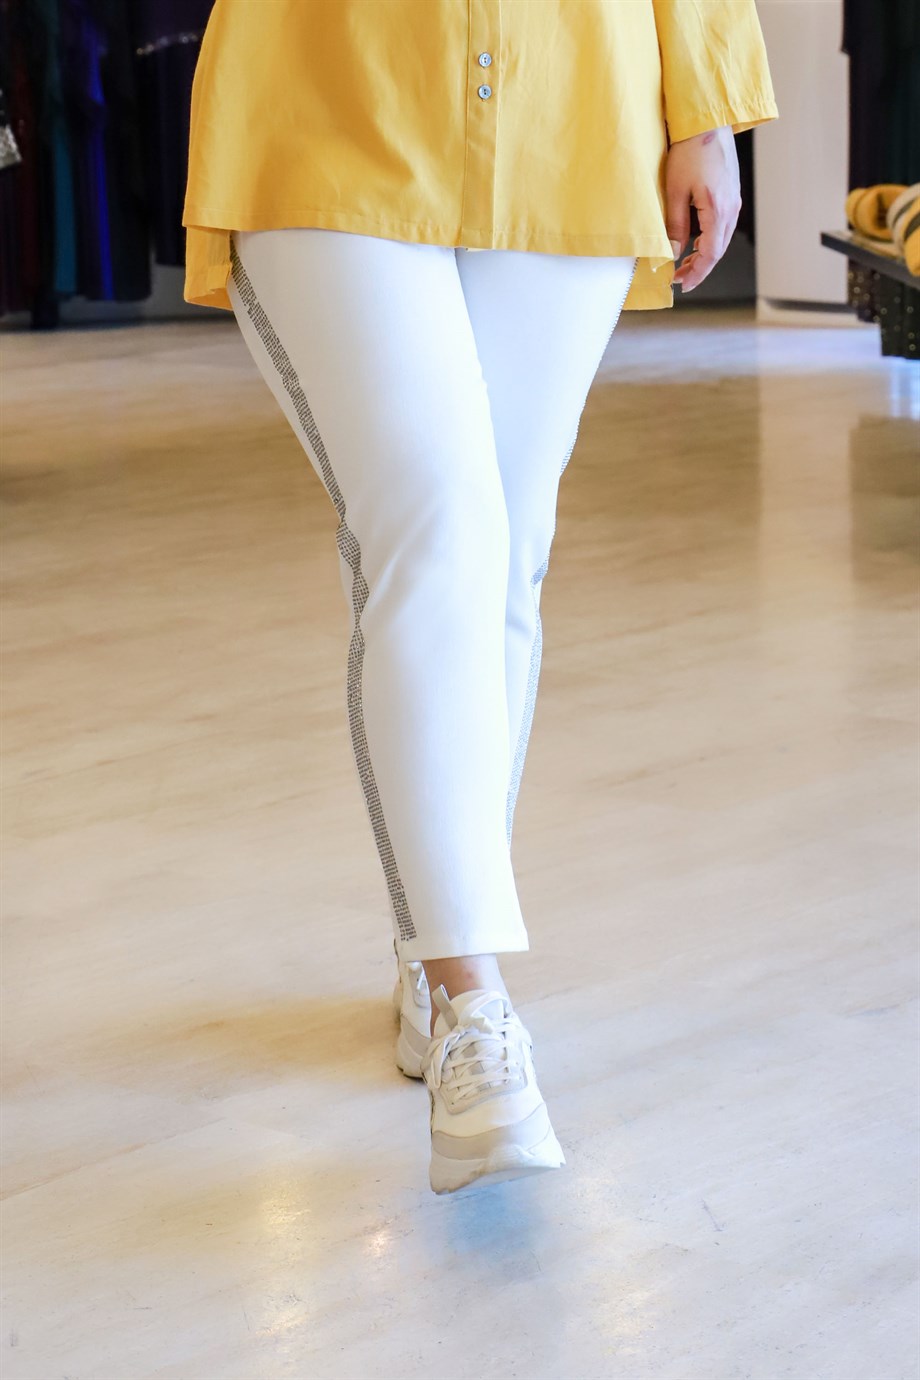 Büyük Beden Işıltı Pantolon Beyaz | büyük beden bayan pantolon modelleri ve  fiyatları | Bedrinxxl